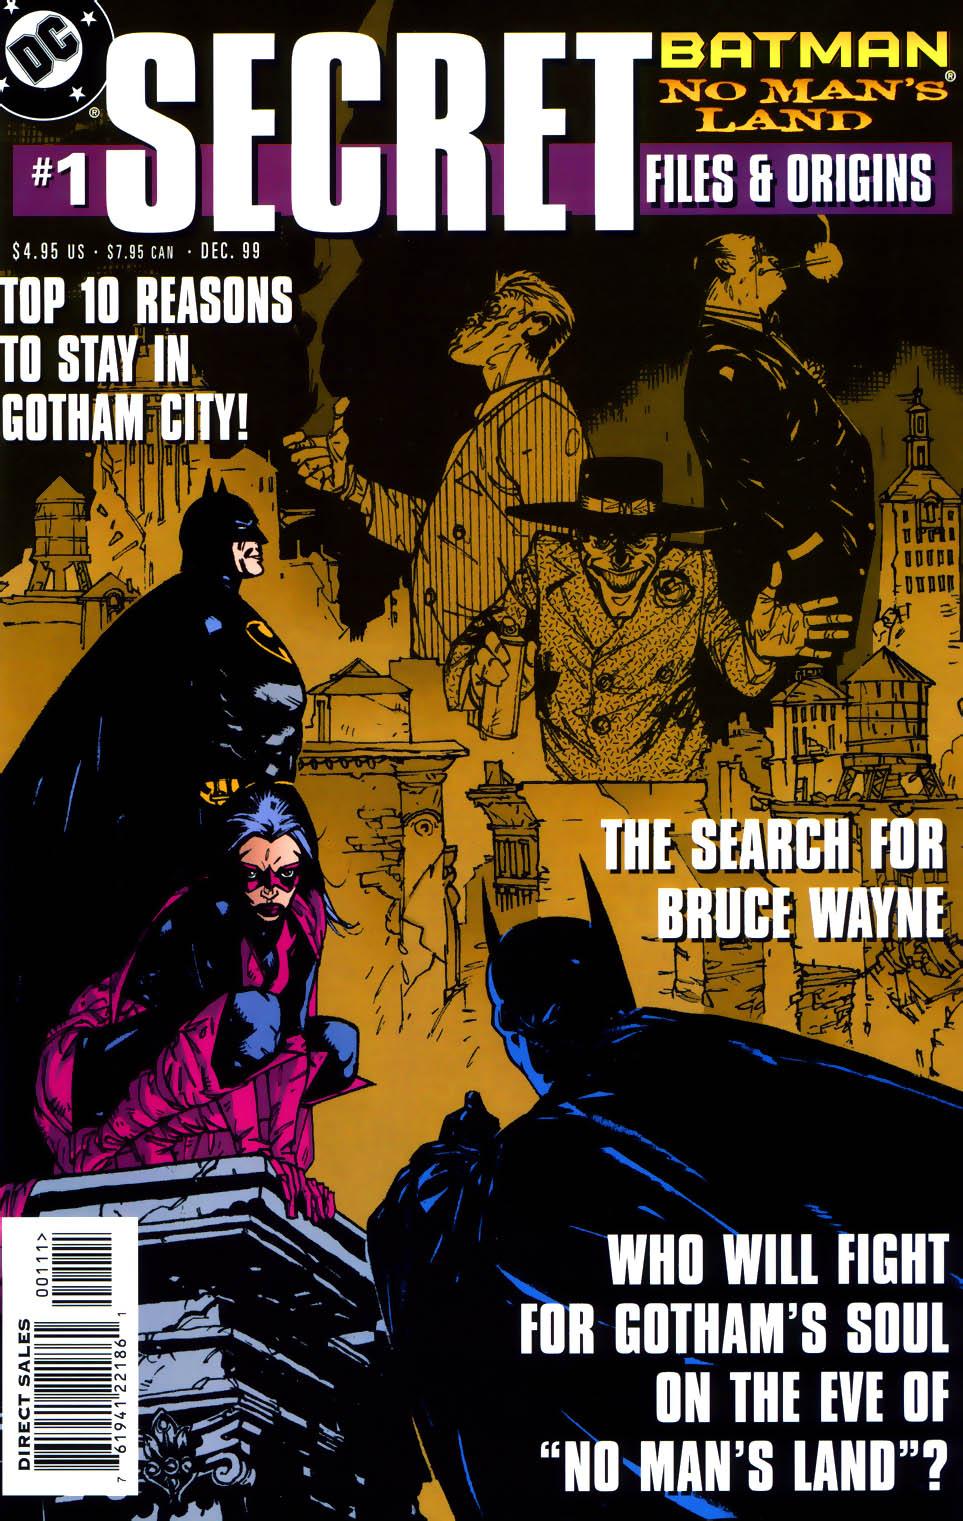 Batman: No Man's Land Secret Files and Origins Vol. 1 #1